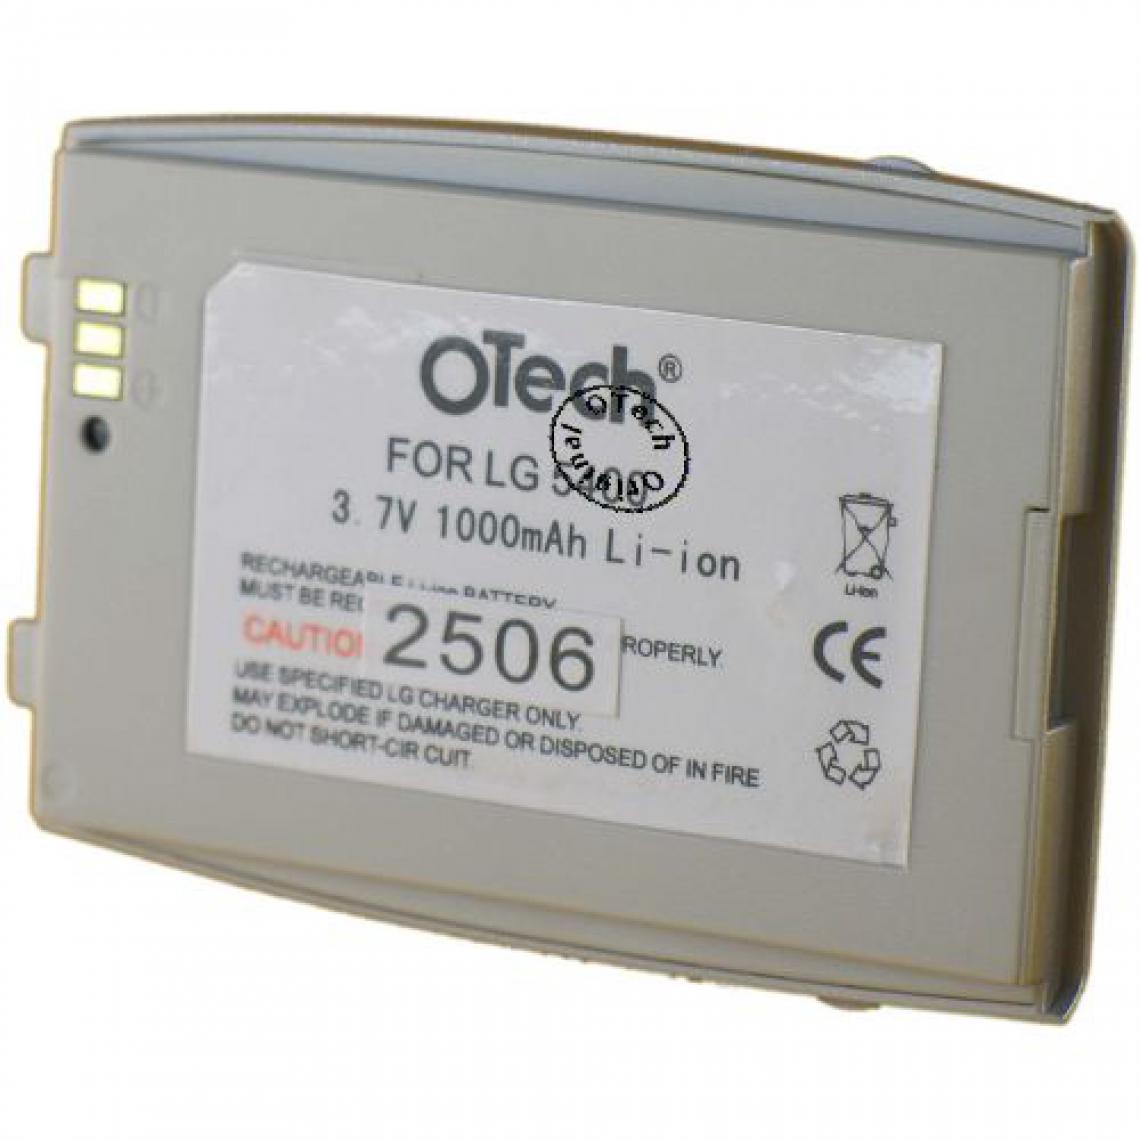 Otech - Batterie compatible pour OTech 3700057310226 - Batterie téléphone